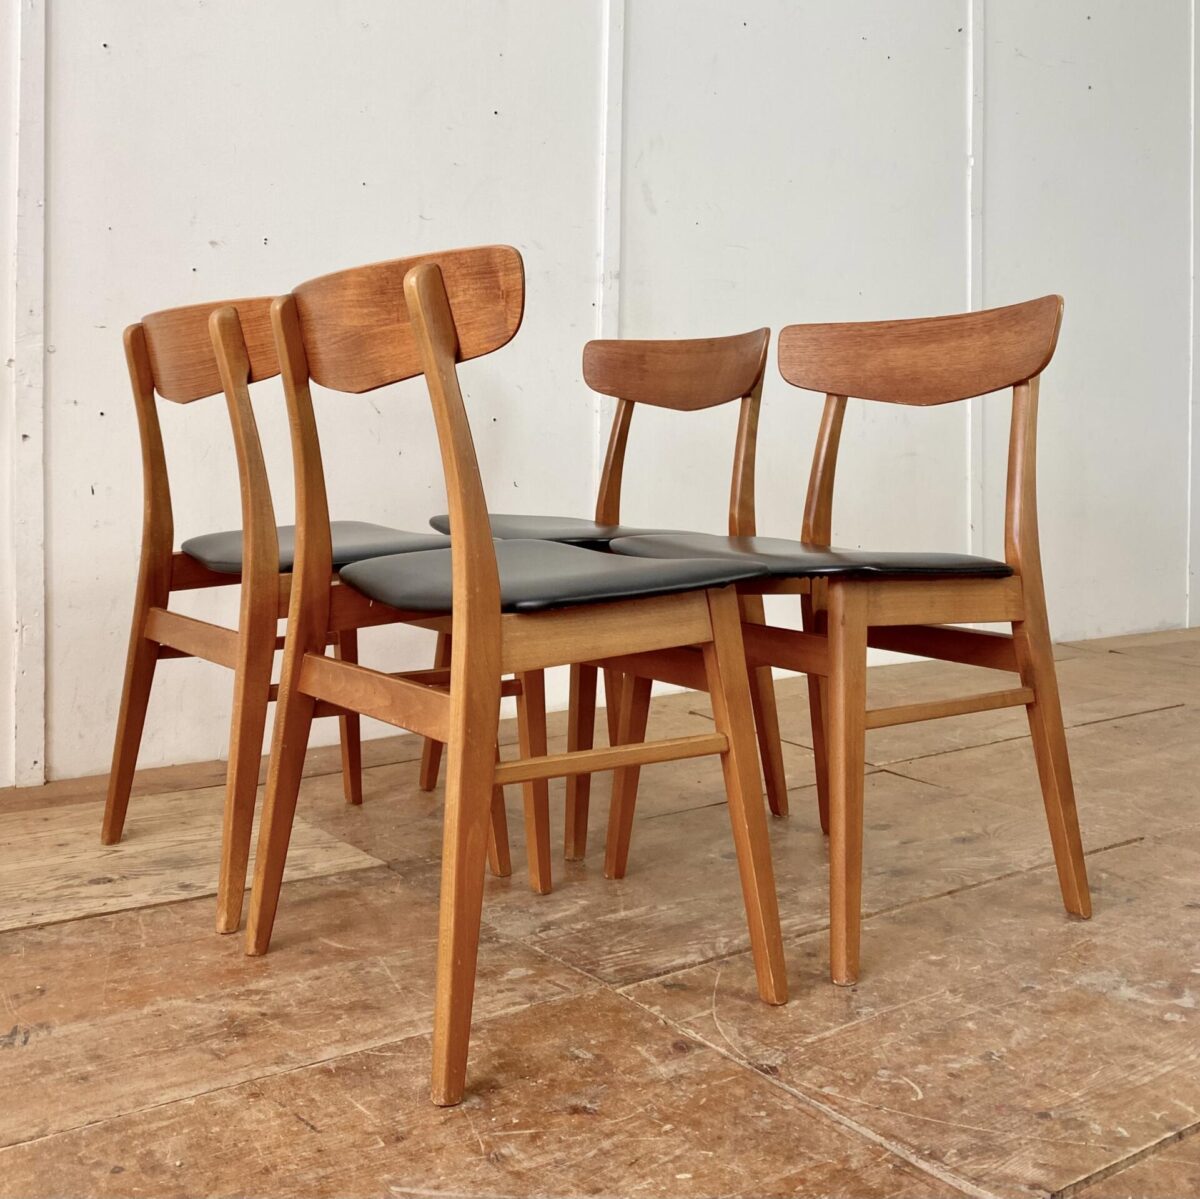 Deuxieme.shop midcentury Dänische Esszimmer Stühle von Farstrup Møbler, aus den 60er Jahren. Preis fürs 4er Set. Die Stühle sind aus Buche Vollholz, die Rückenlehne ist mit Teakholz furniert. Sitzflächen mit schwarzem Kunstleder bezogen, bis auf ein paar kleine Kratzer und etwas Wasserflecken am Holzgestell, sind die Stühle in gutem Vintage Zustand.